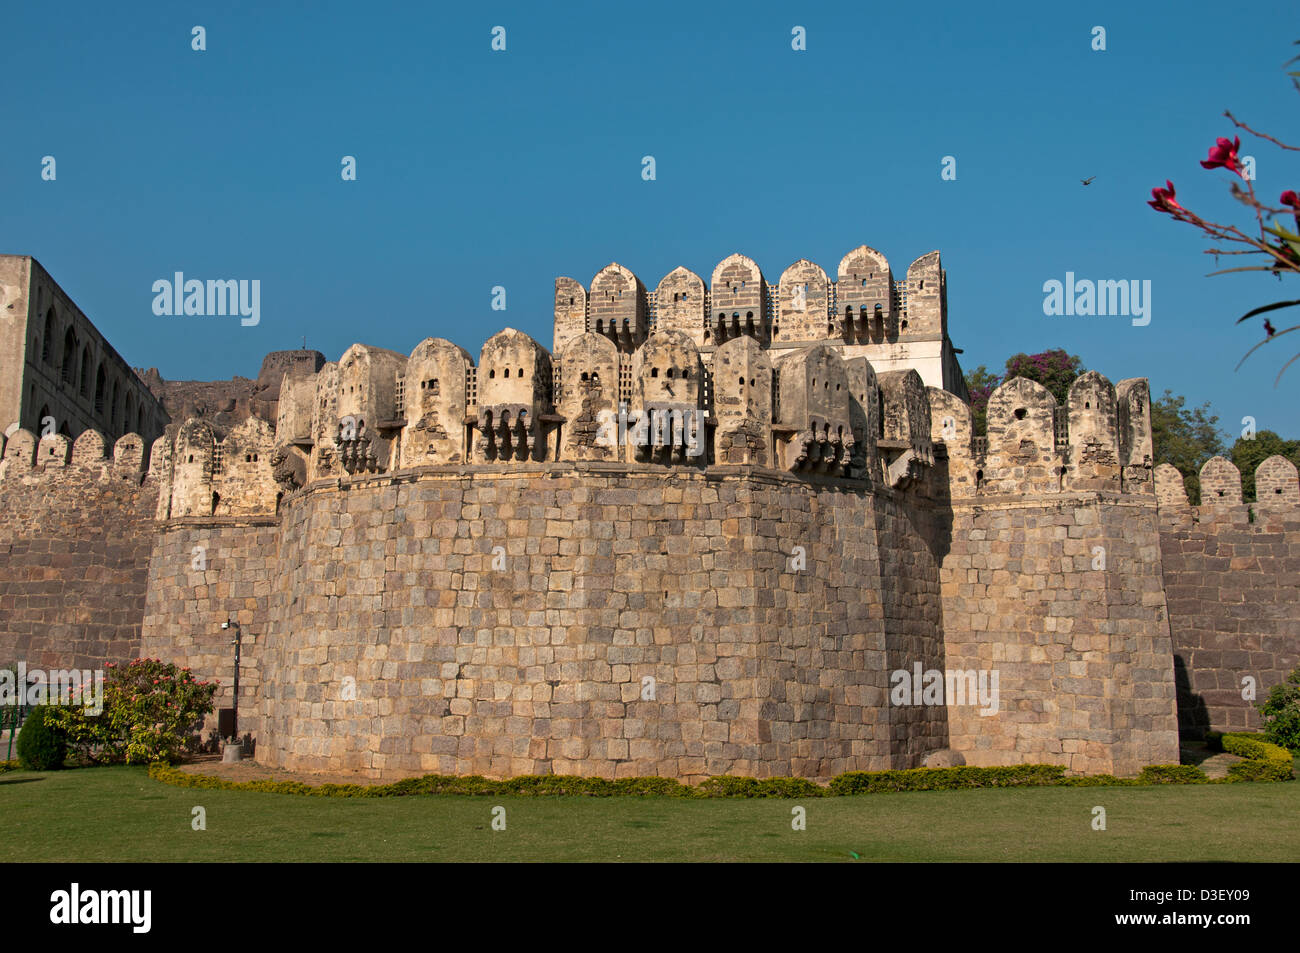 Golkonda Fort ruiniert Hauptstadt des alten Königreichs von Golkonda 1518 – 1687 Hyderabad Indien Andhra Pradesh Stockfoto